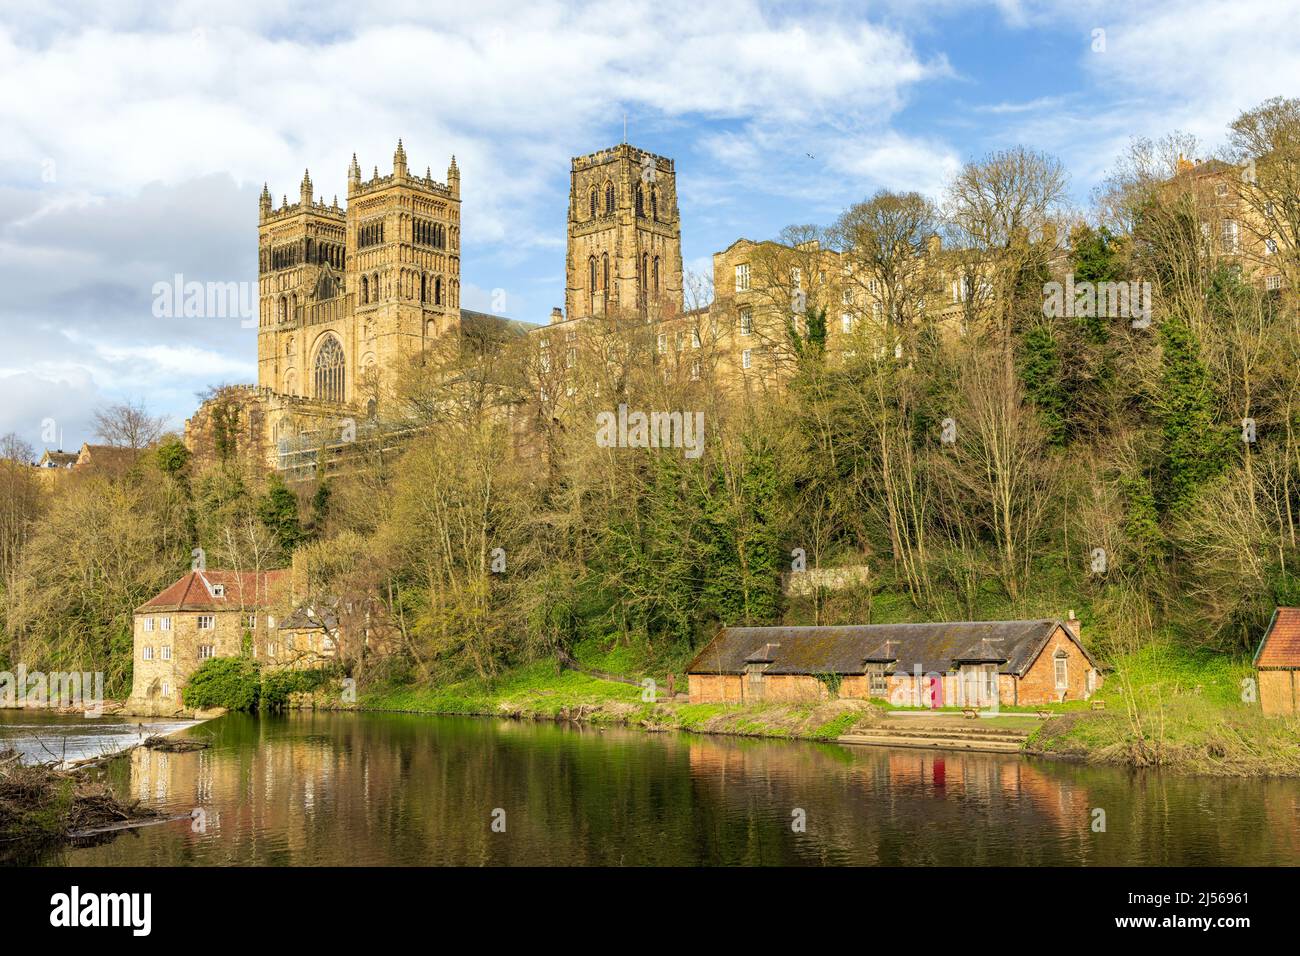 Die prächtige Kathedrale von Durham, die über den Fluss Wear in der Stadt Durham gesehen wird. Aufgenommen an einem hellen Frühlingstag. Stockfoto